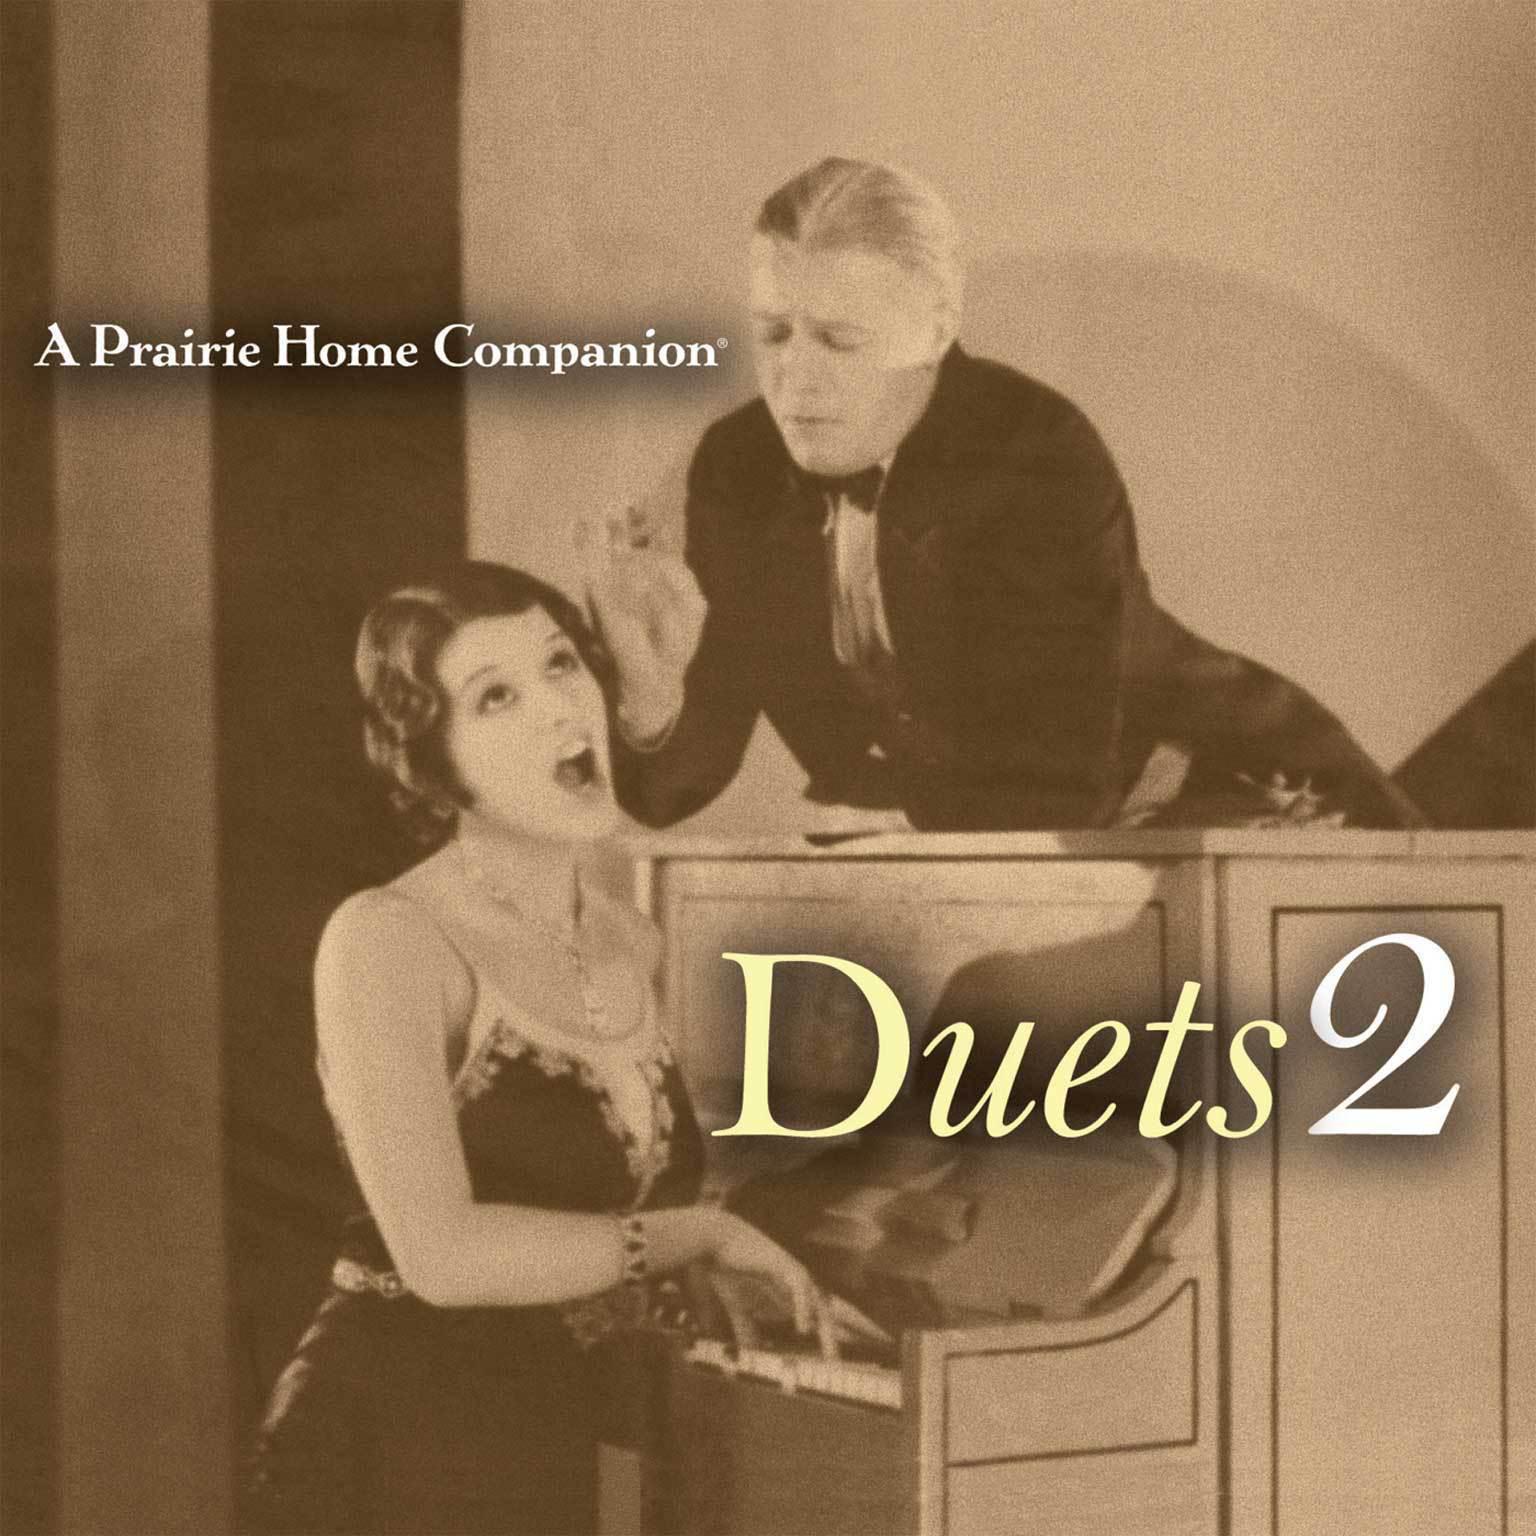 A Prairie Home Companion: Duets 2 Audiobook, by Garrison Keillor